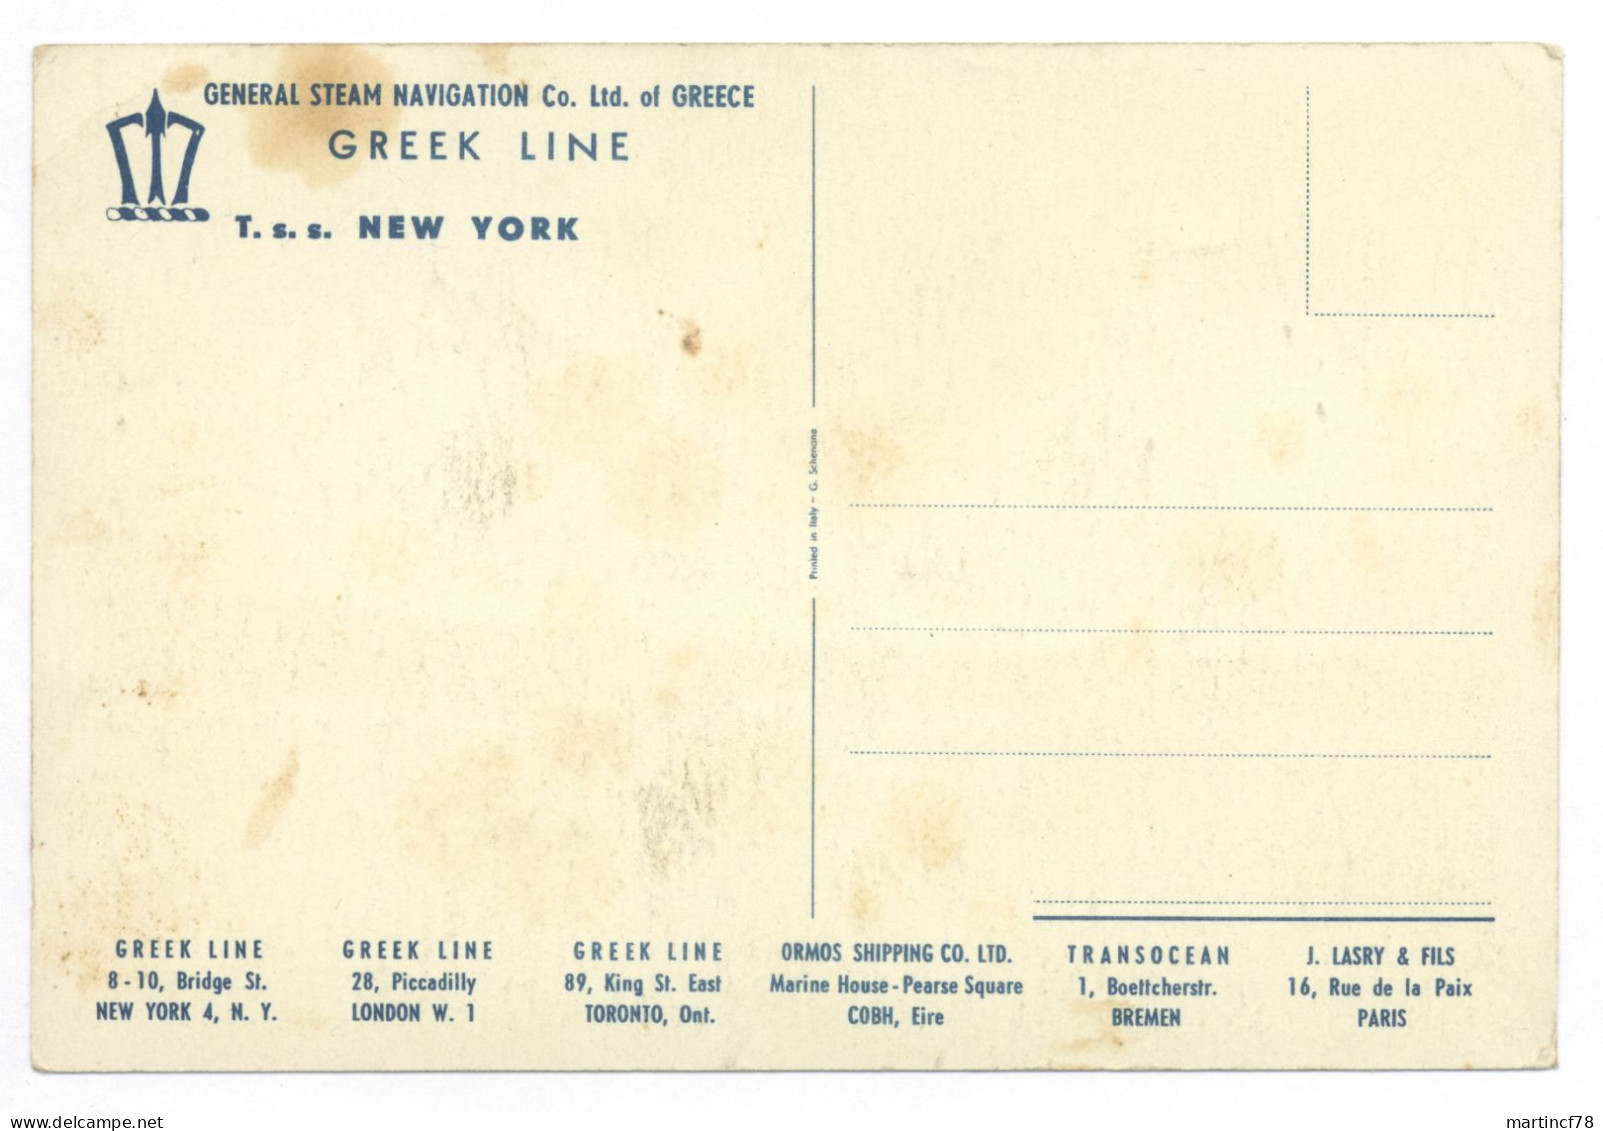 Greek Line T. S. S. New York General Steam Navigation Co. Ltd. Of Greece - Dampfer